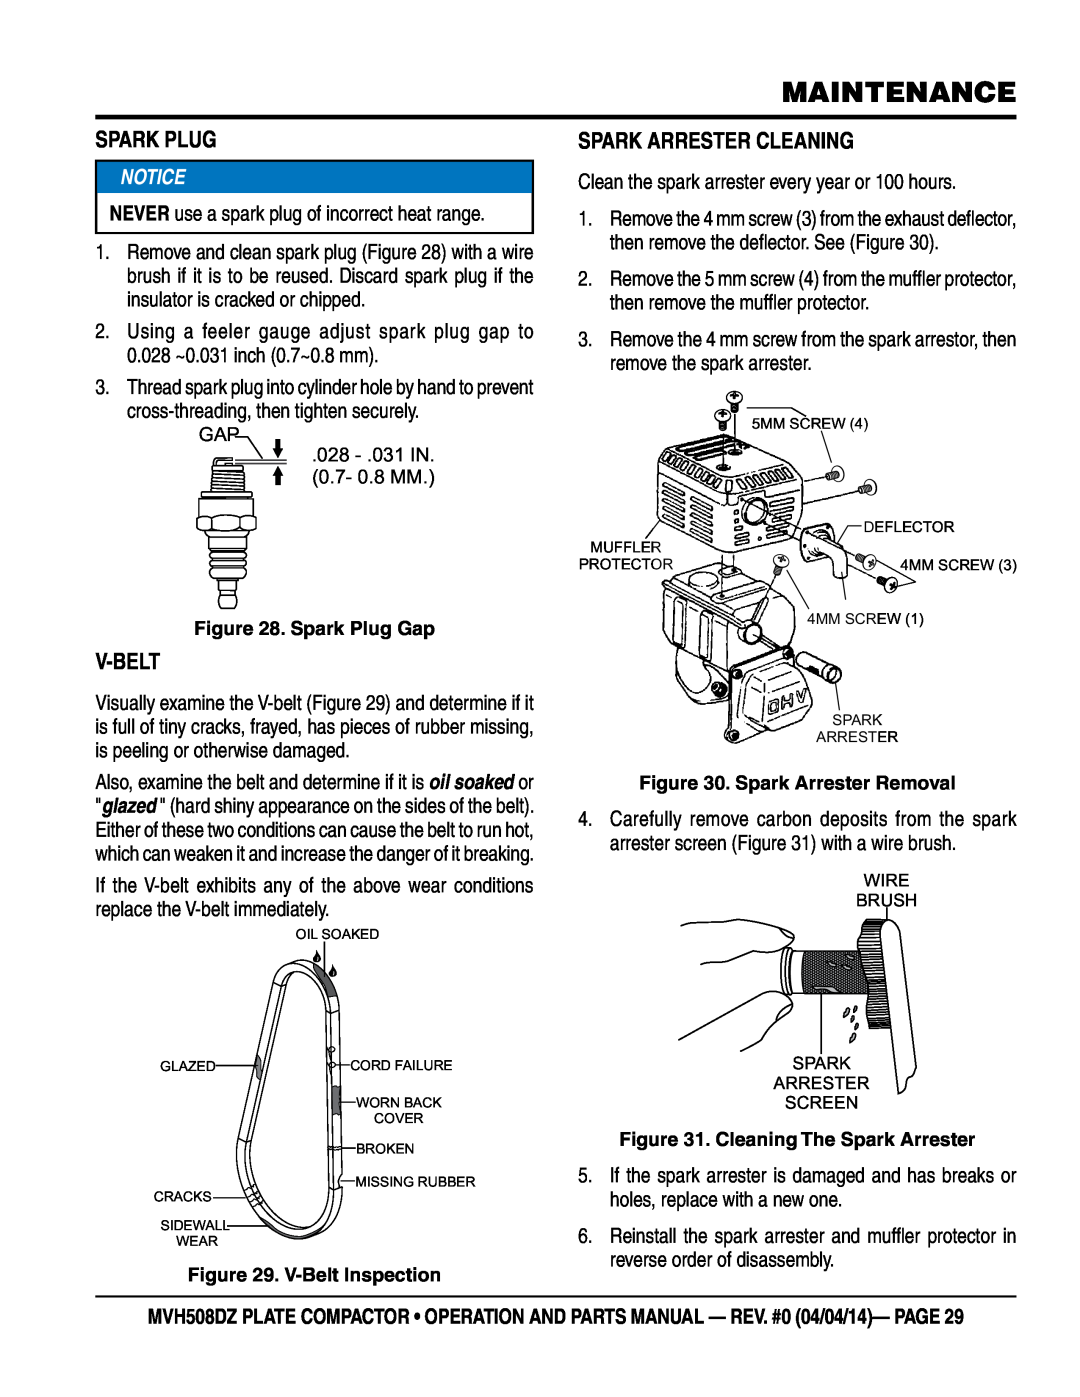 Multiquip HATZ1D81S-325 manual Spark Plug, V-Belt, Spark Arrester Cleaning, Maintenance 